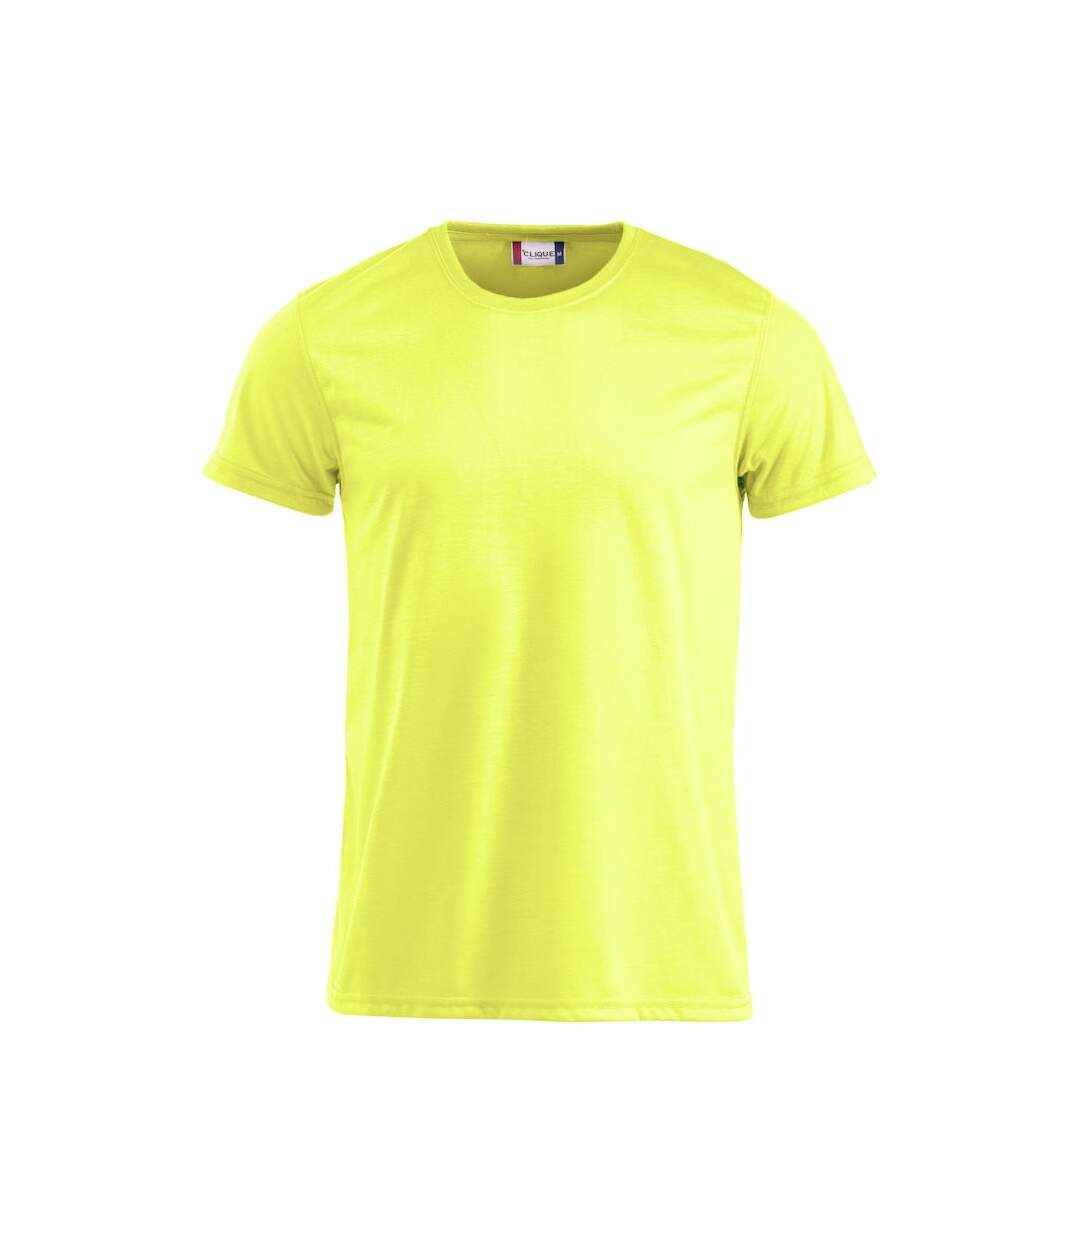 Clique - T-shirt - Homme (Jaune néon) - UTUB521